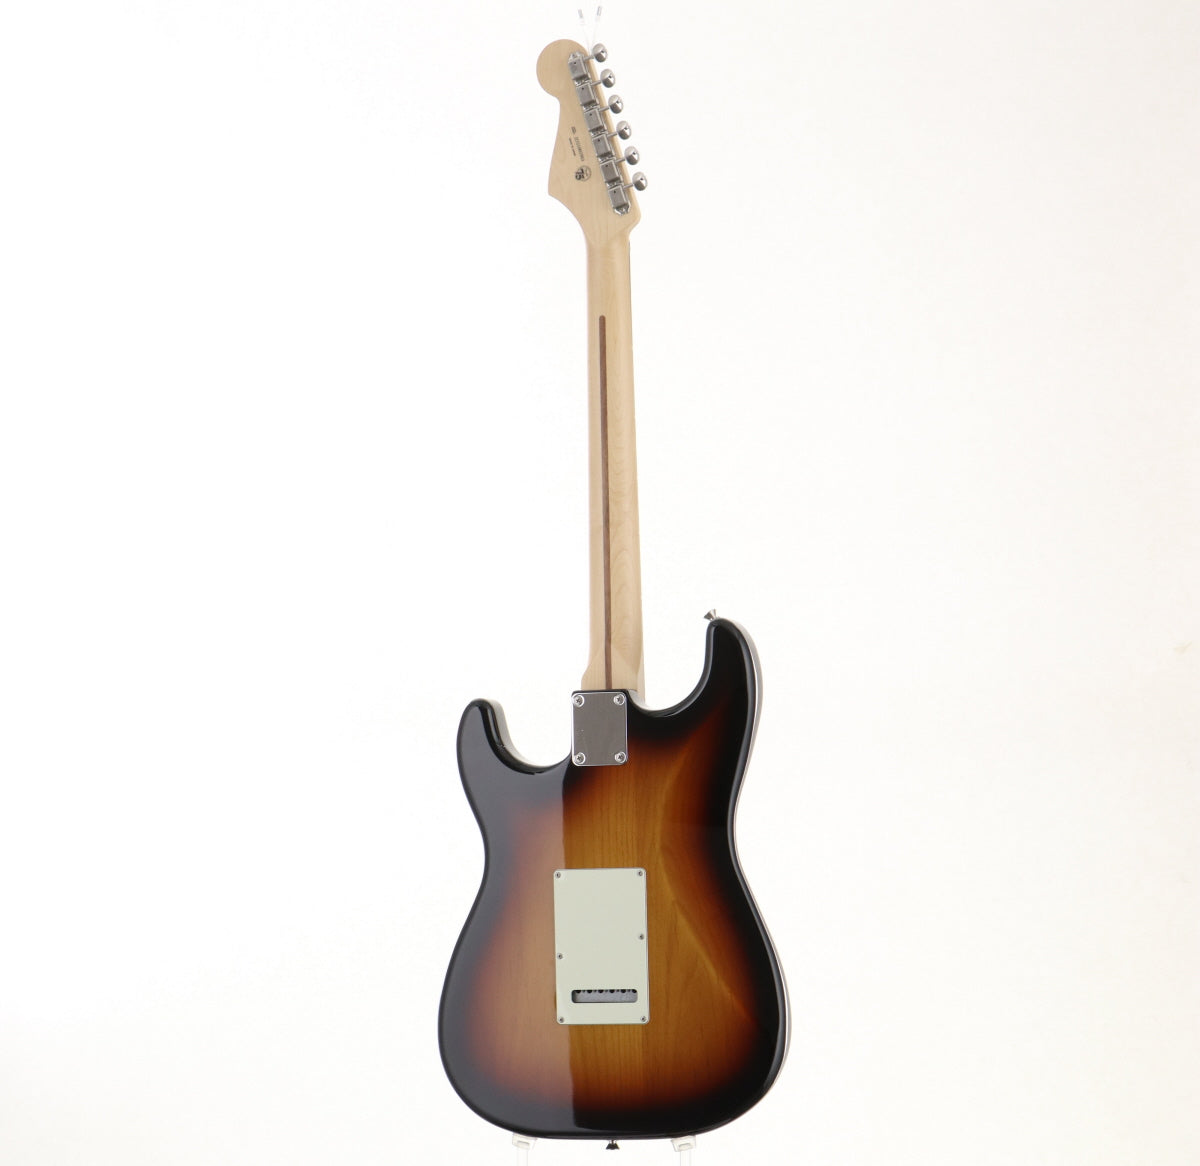 [SN JD21002503] USED Fender / M.I.J. Hybrid II Stratocaster 3CS [06]